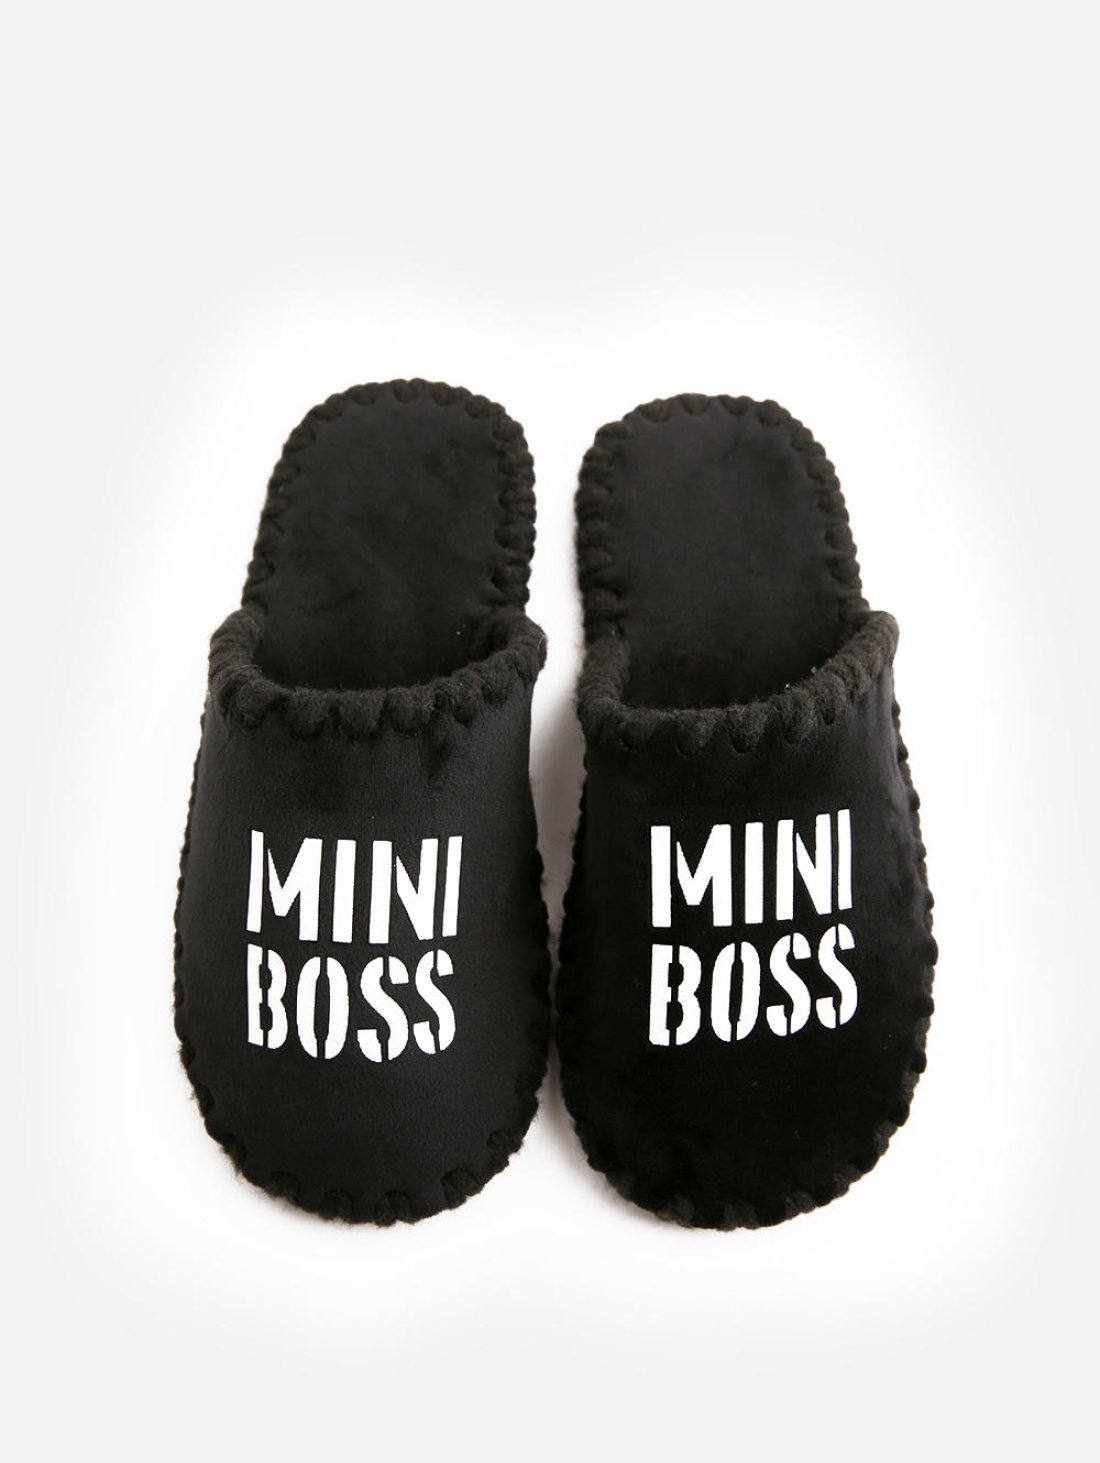 Дитячі домашні капці Mini Boss, чорні закриті, Family Story - Buy